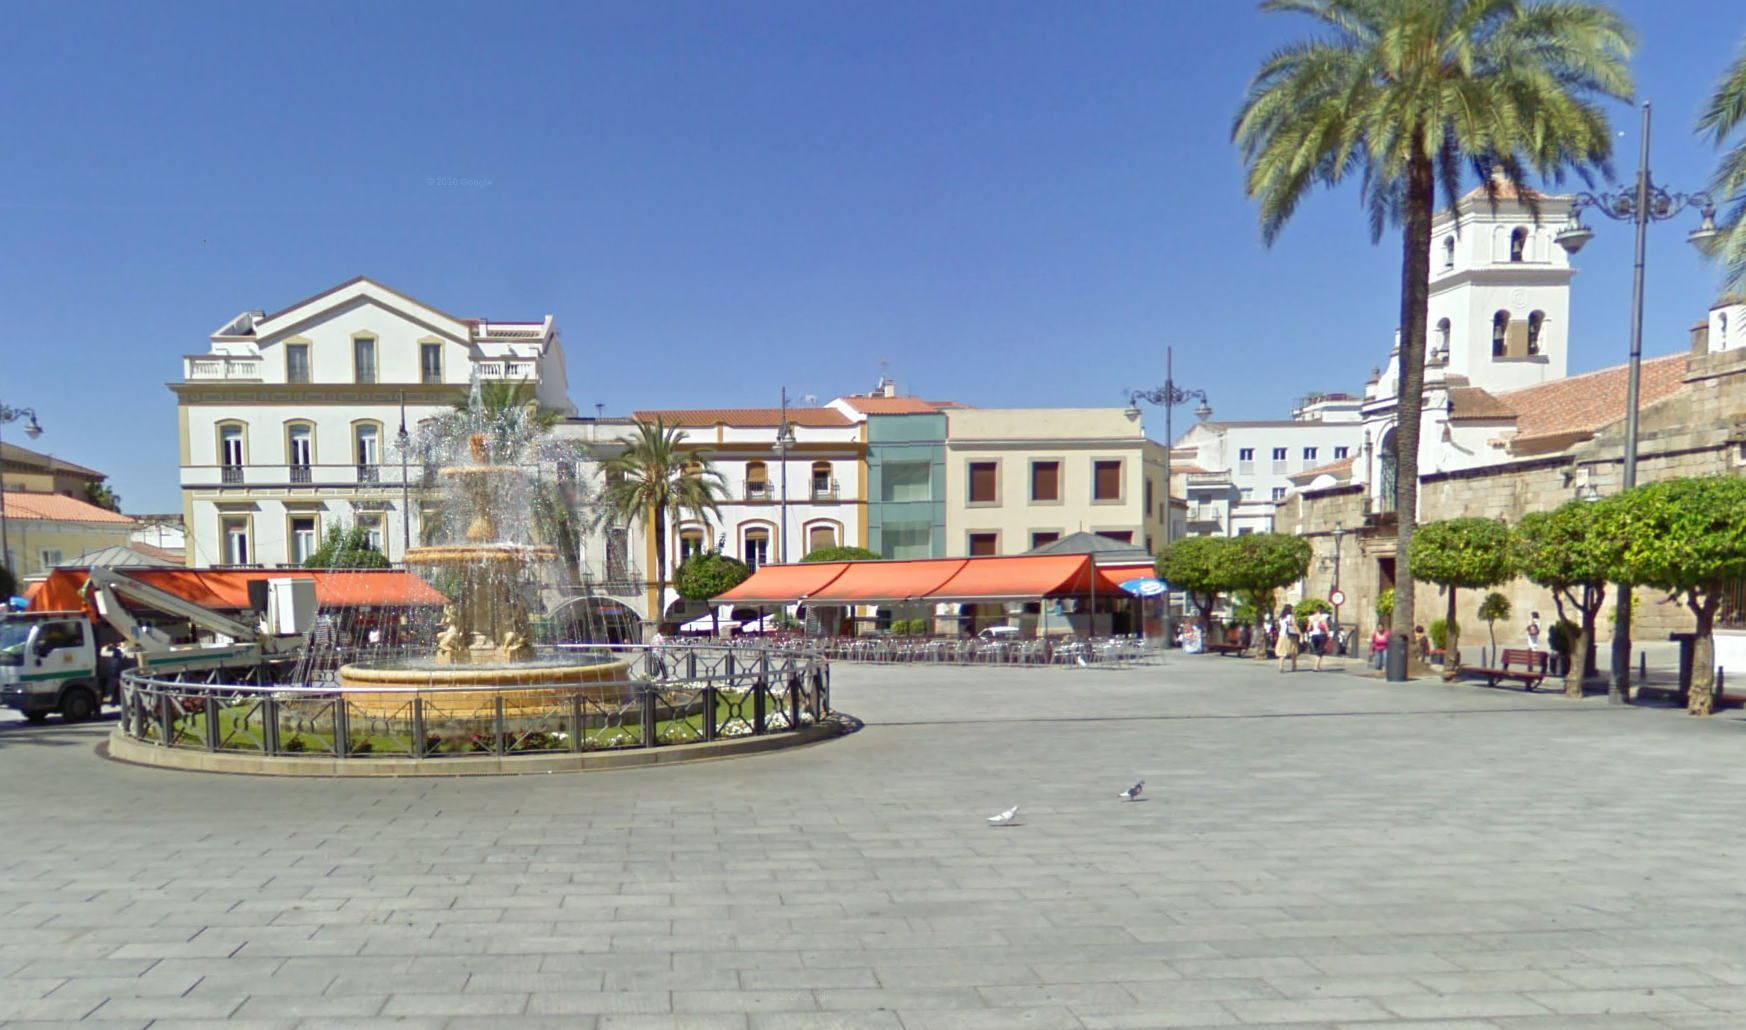 Plaza de España by Google Earth